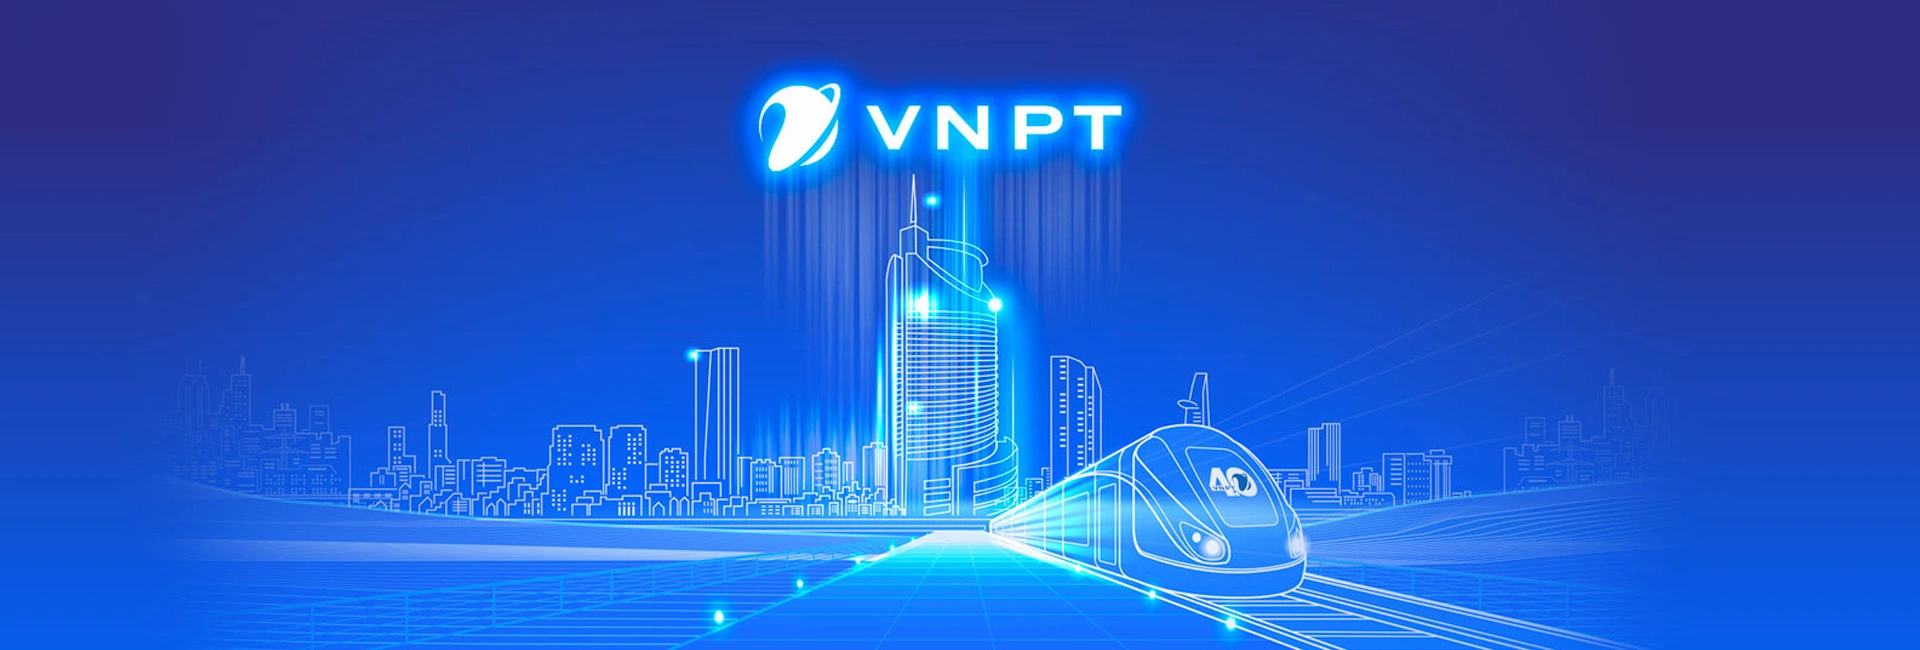 Banner VNPT